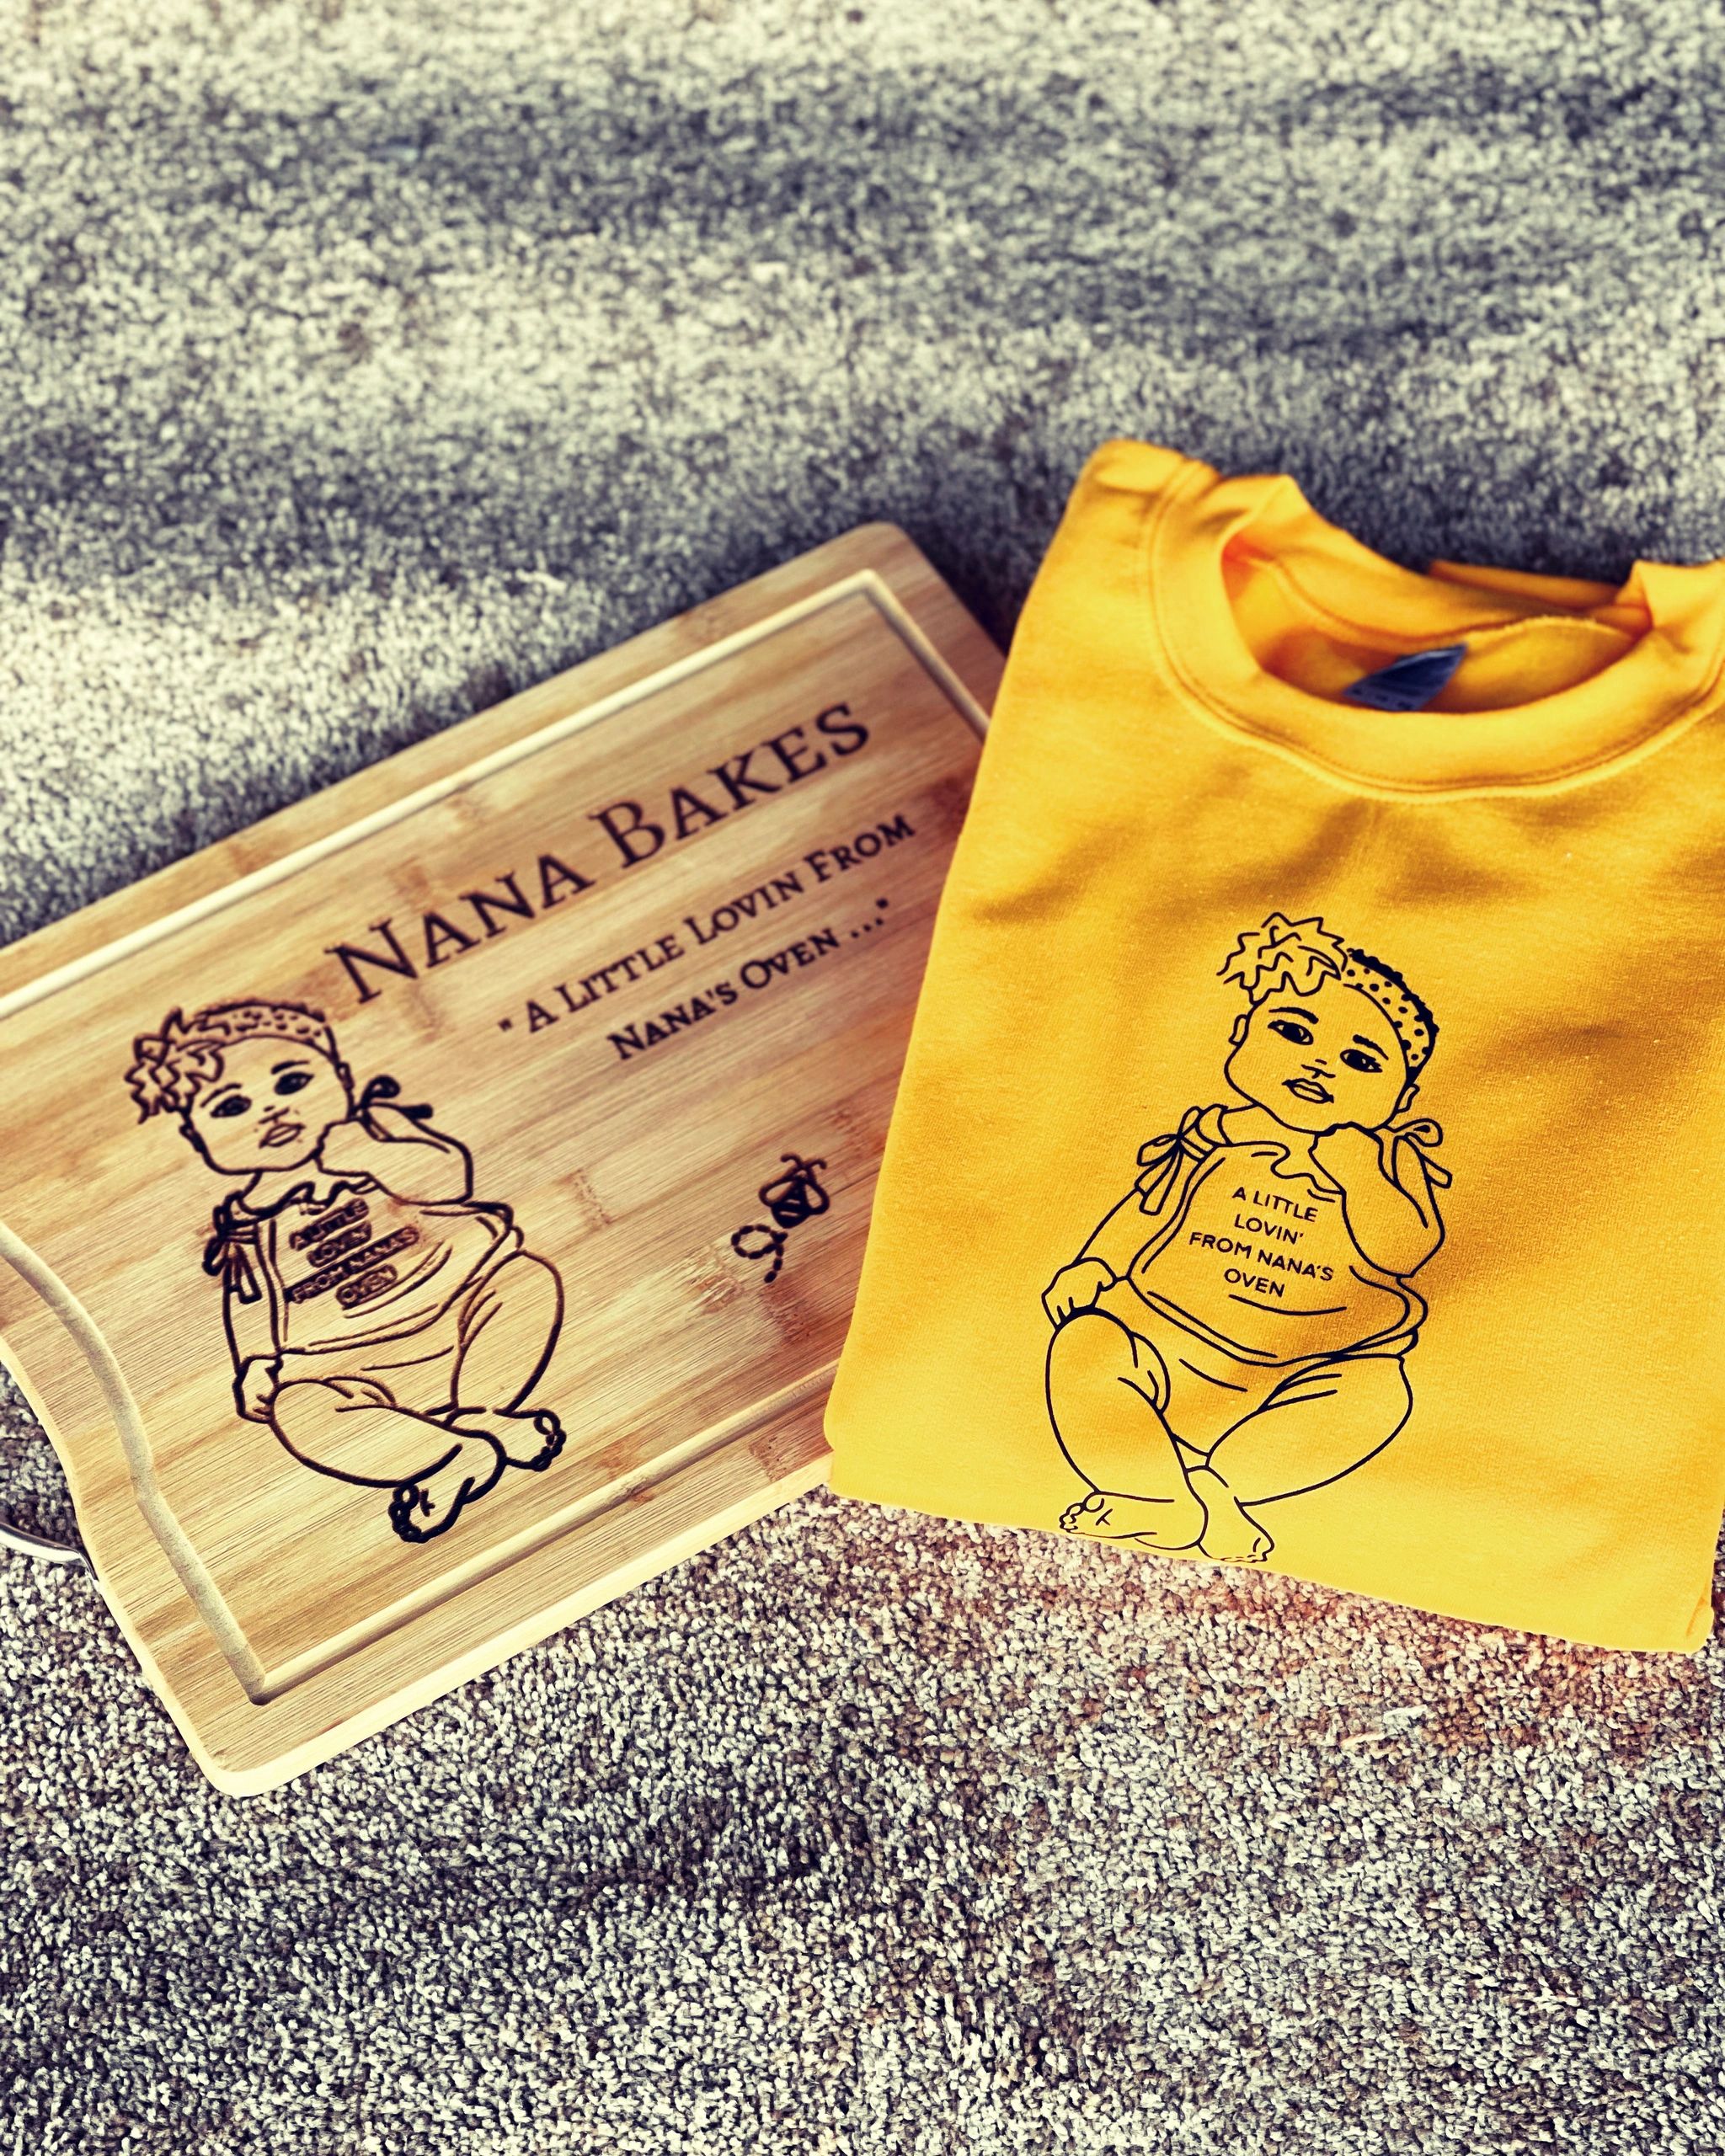 Nana Bakes merchandise…